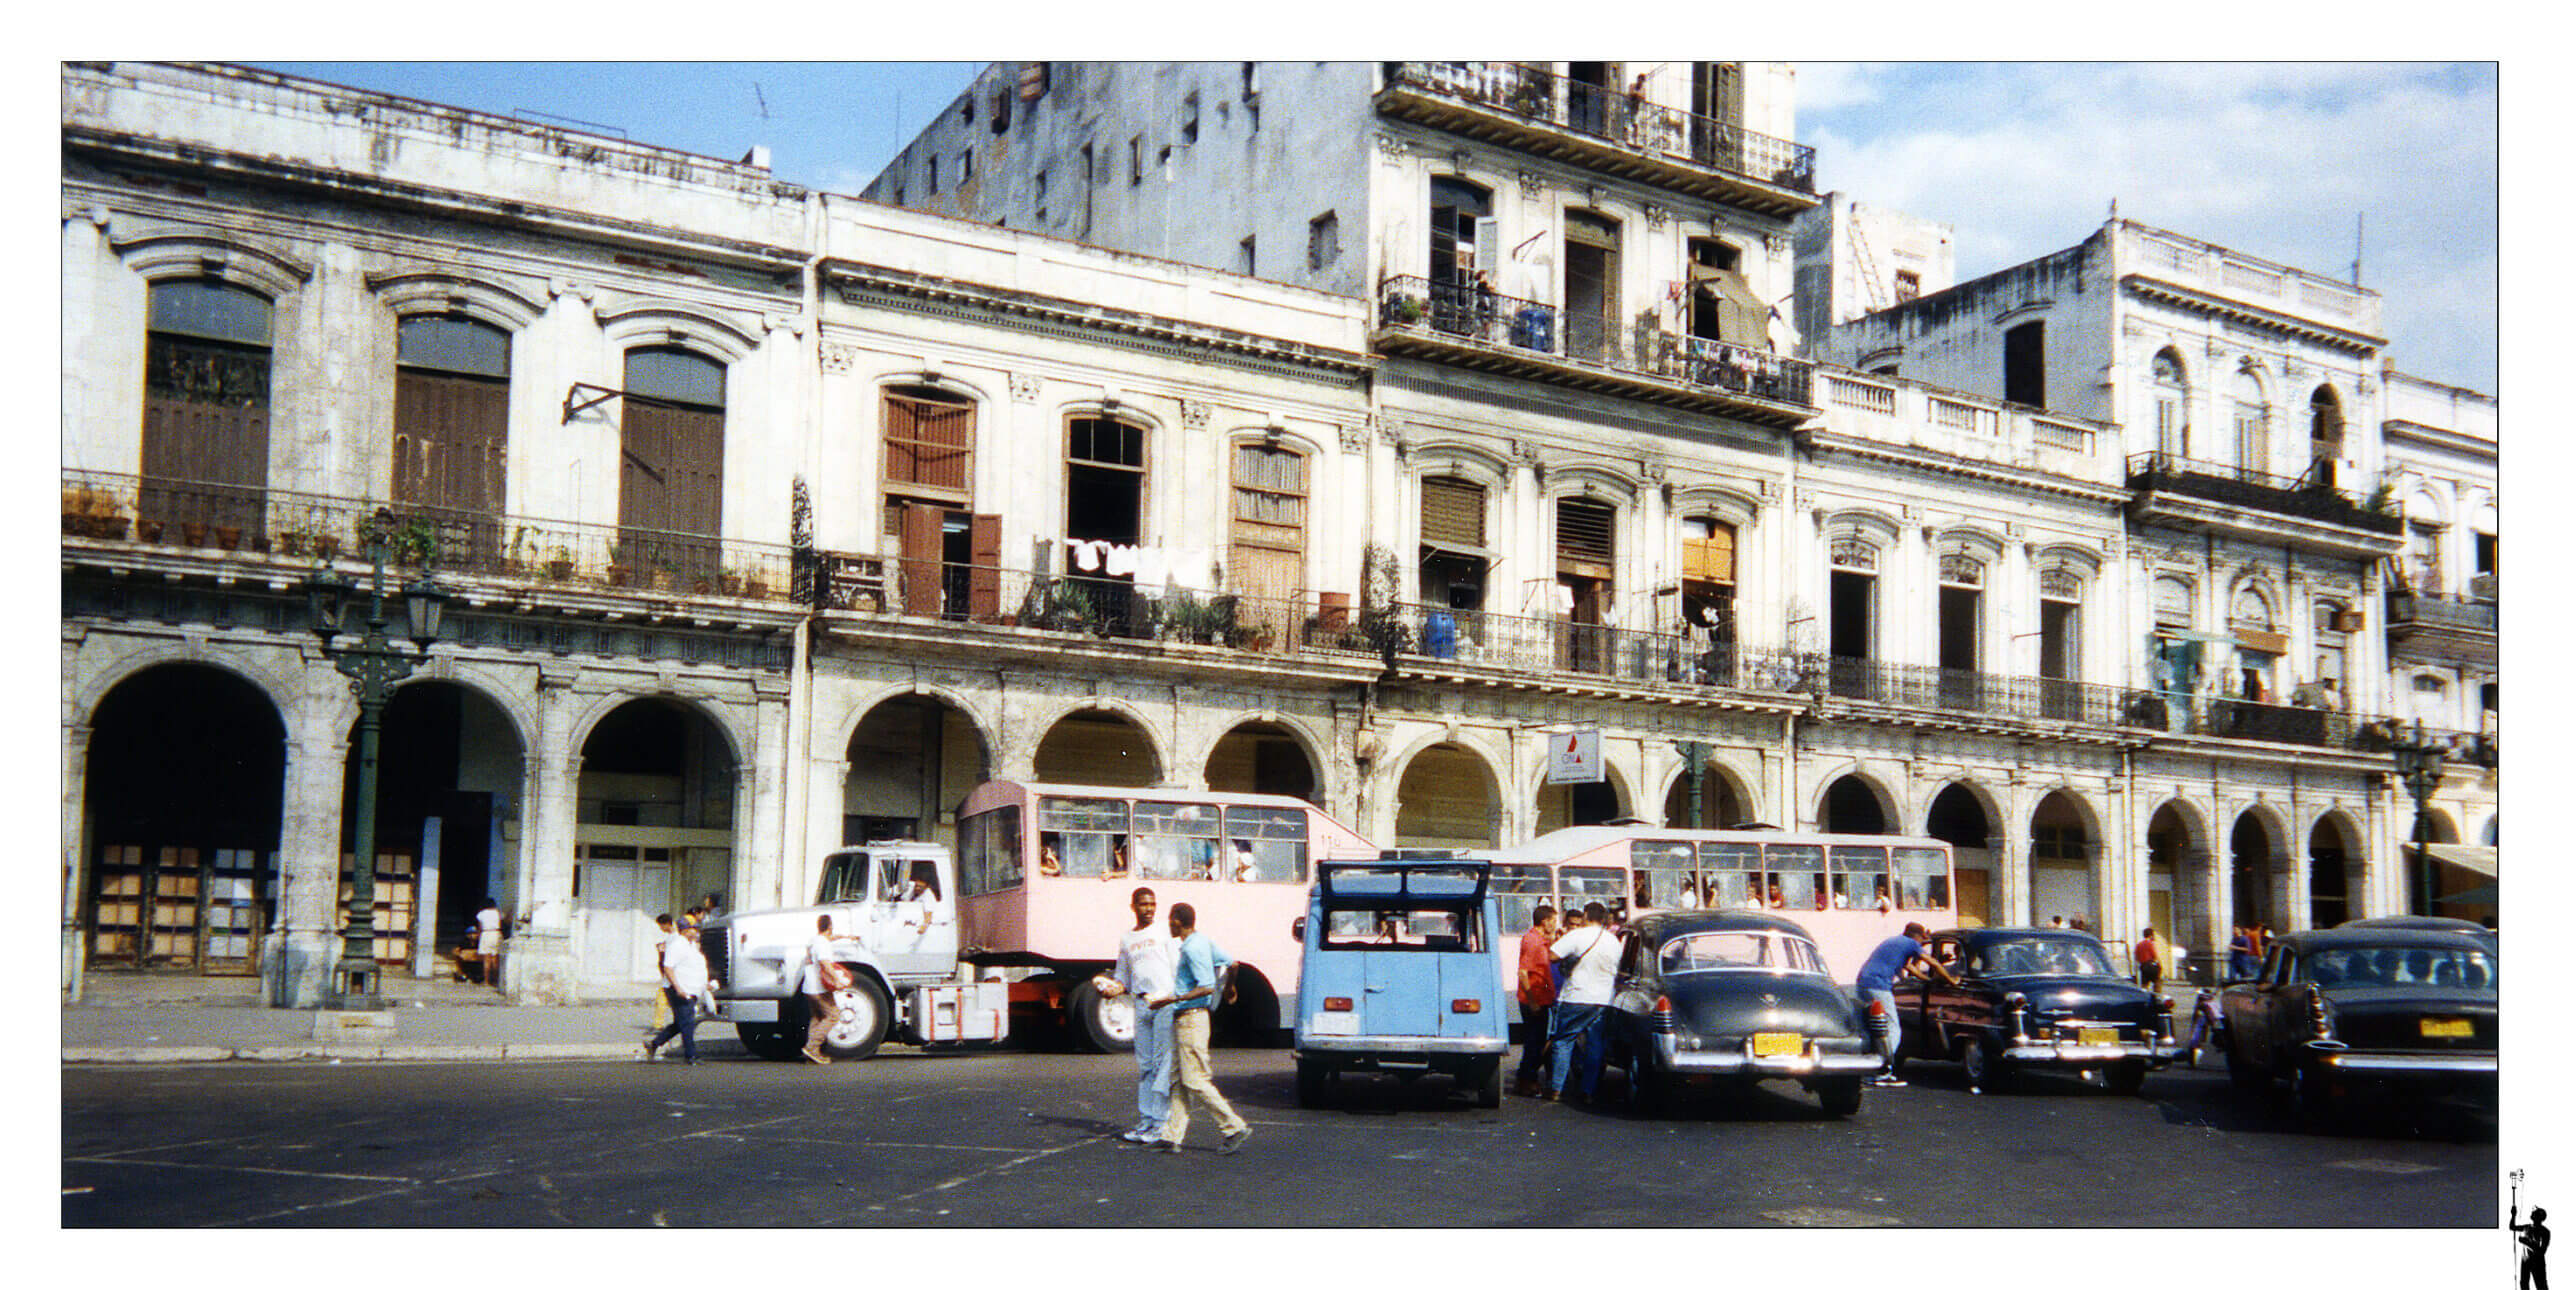 Cuba à l'argentique et ses vieilles voitures